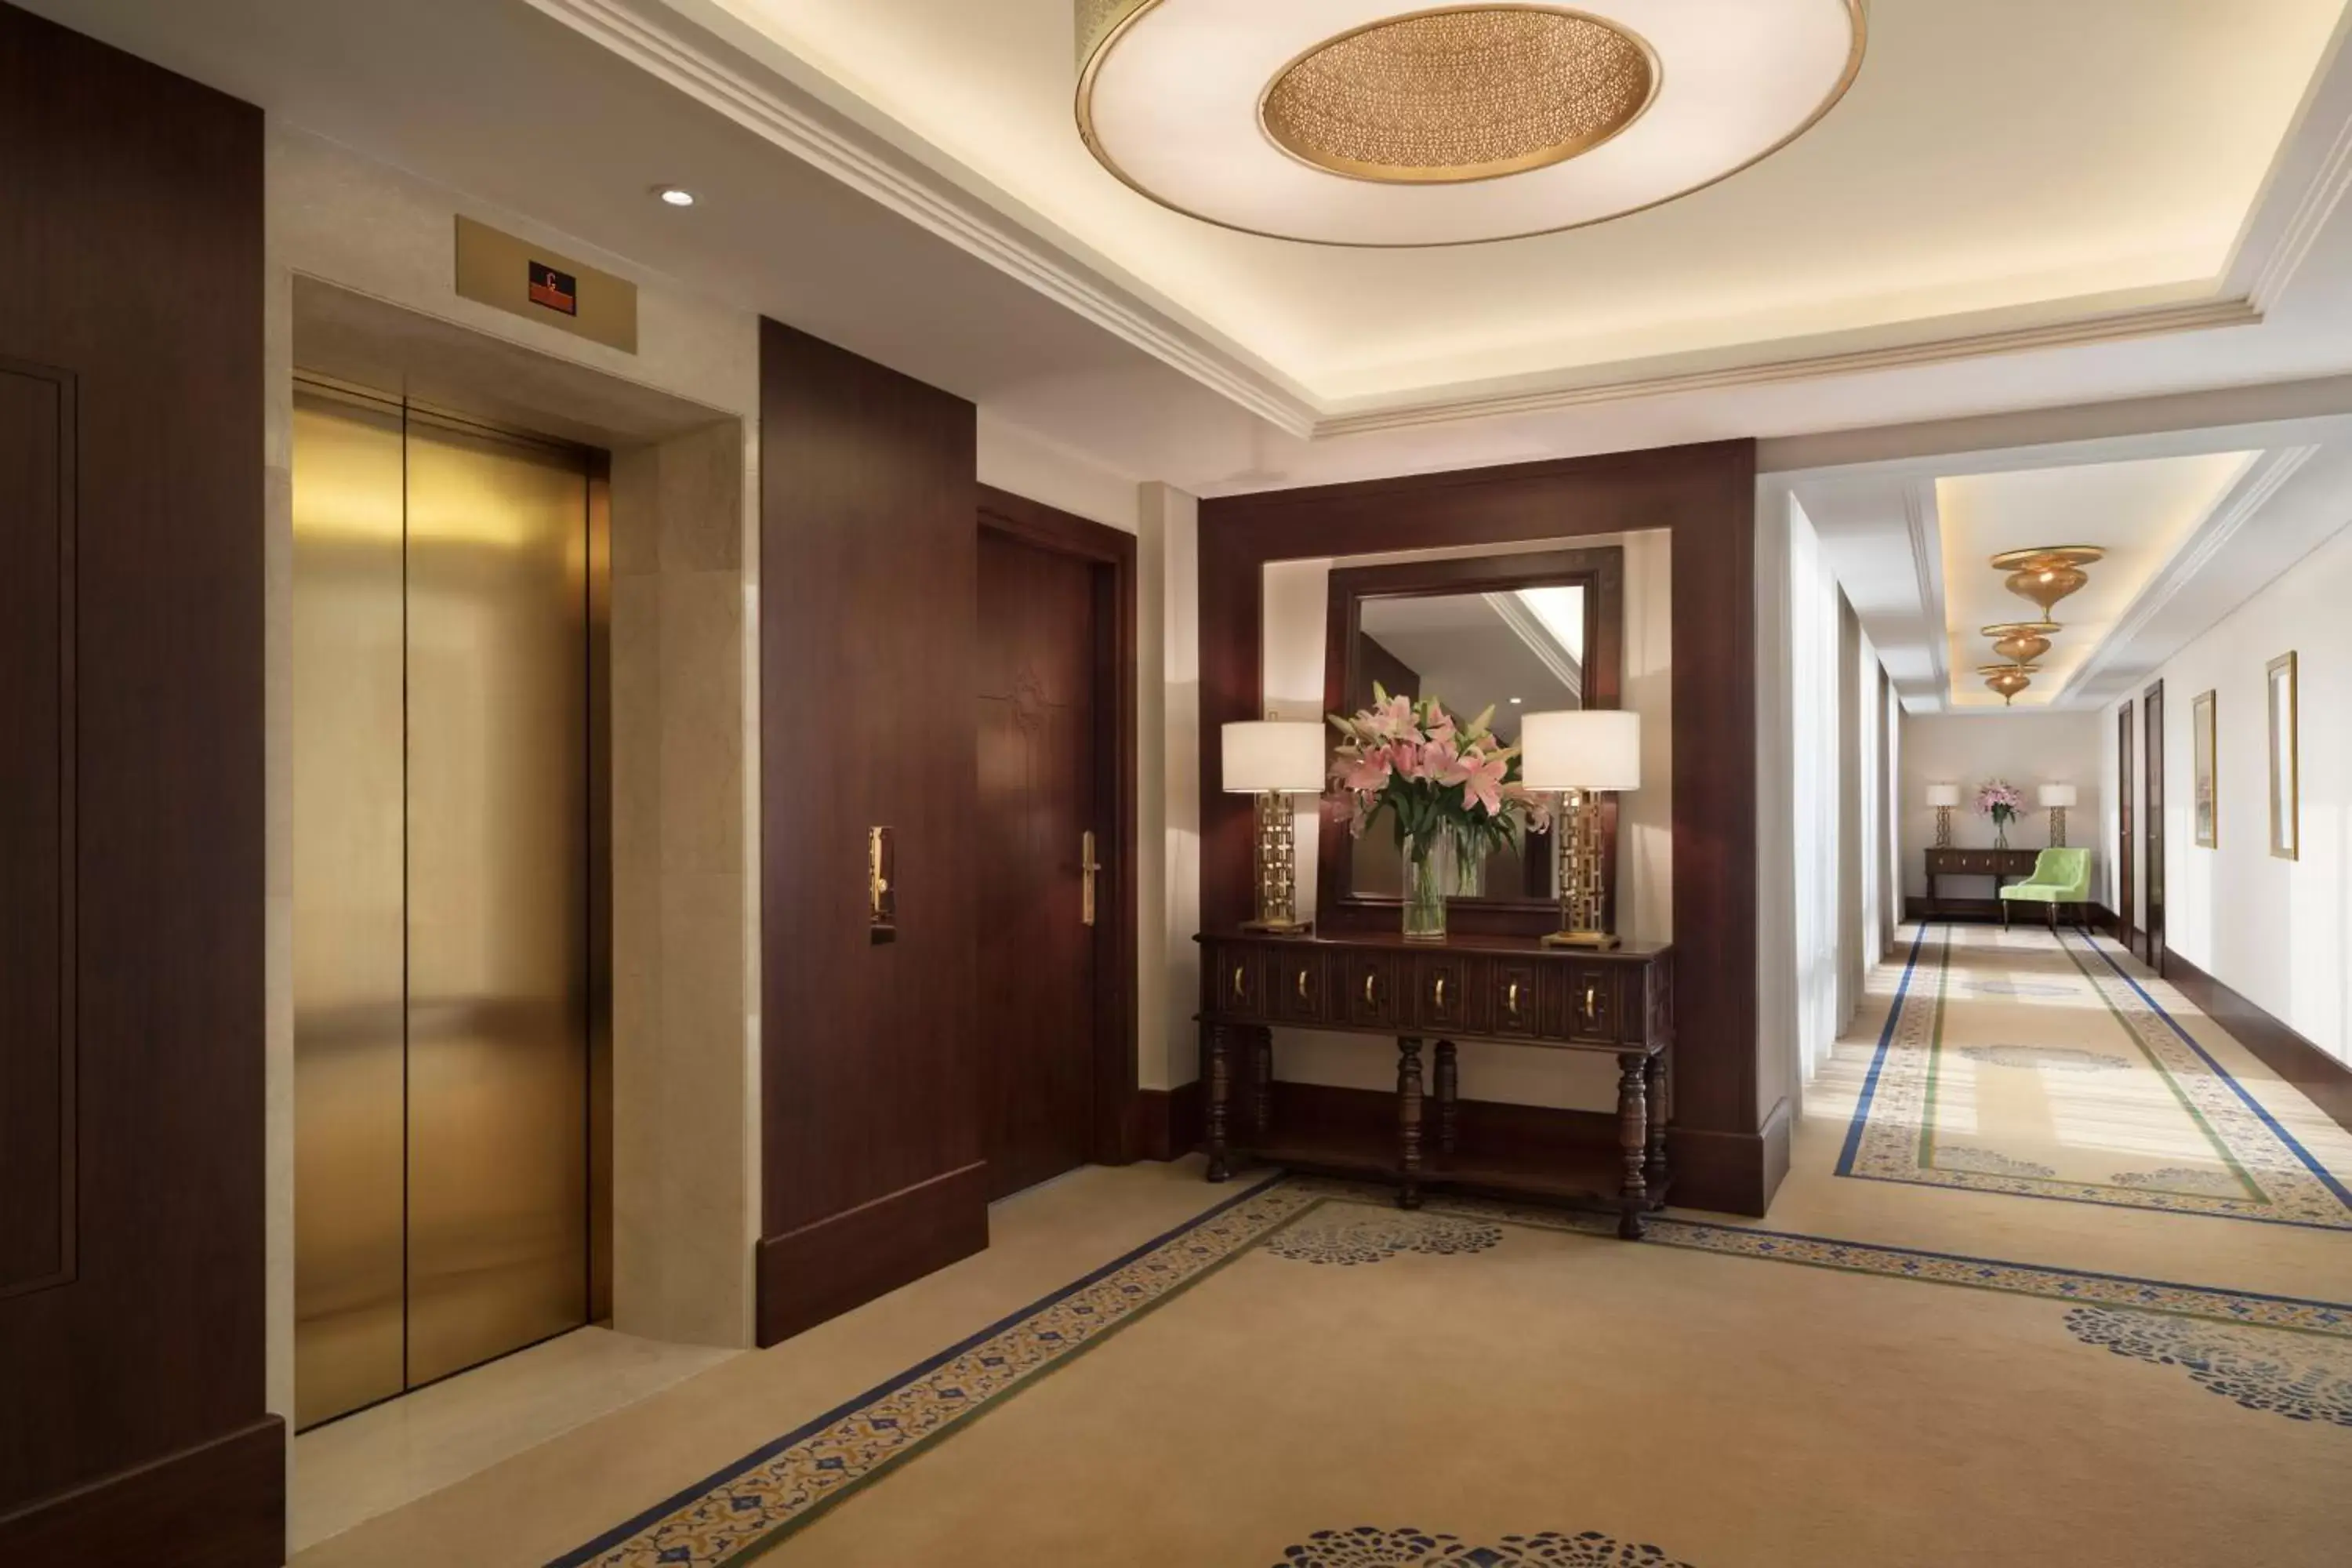 Area and facilities in Al Najada Doha Hotel by Tivoli